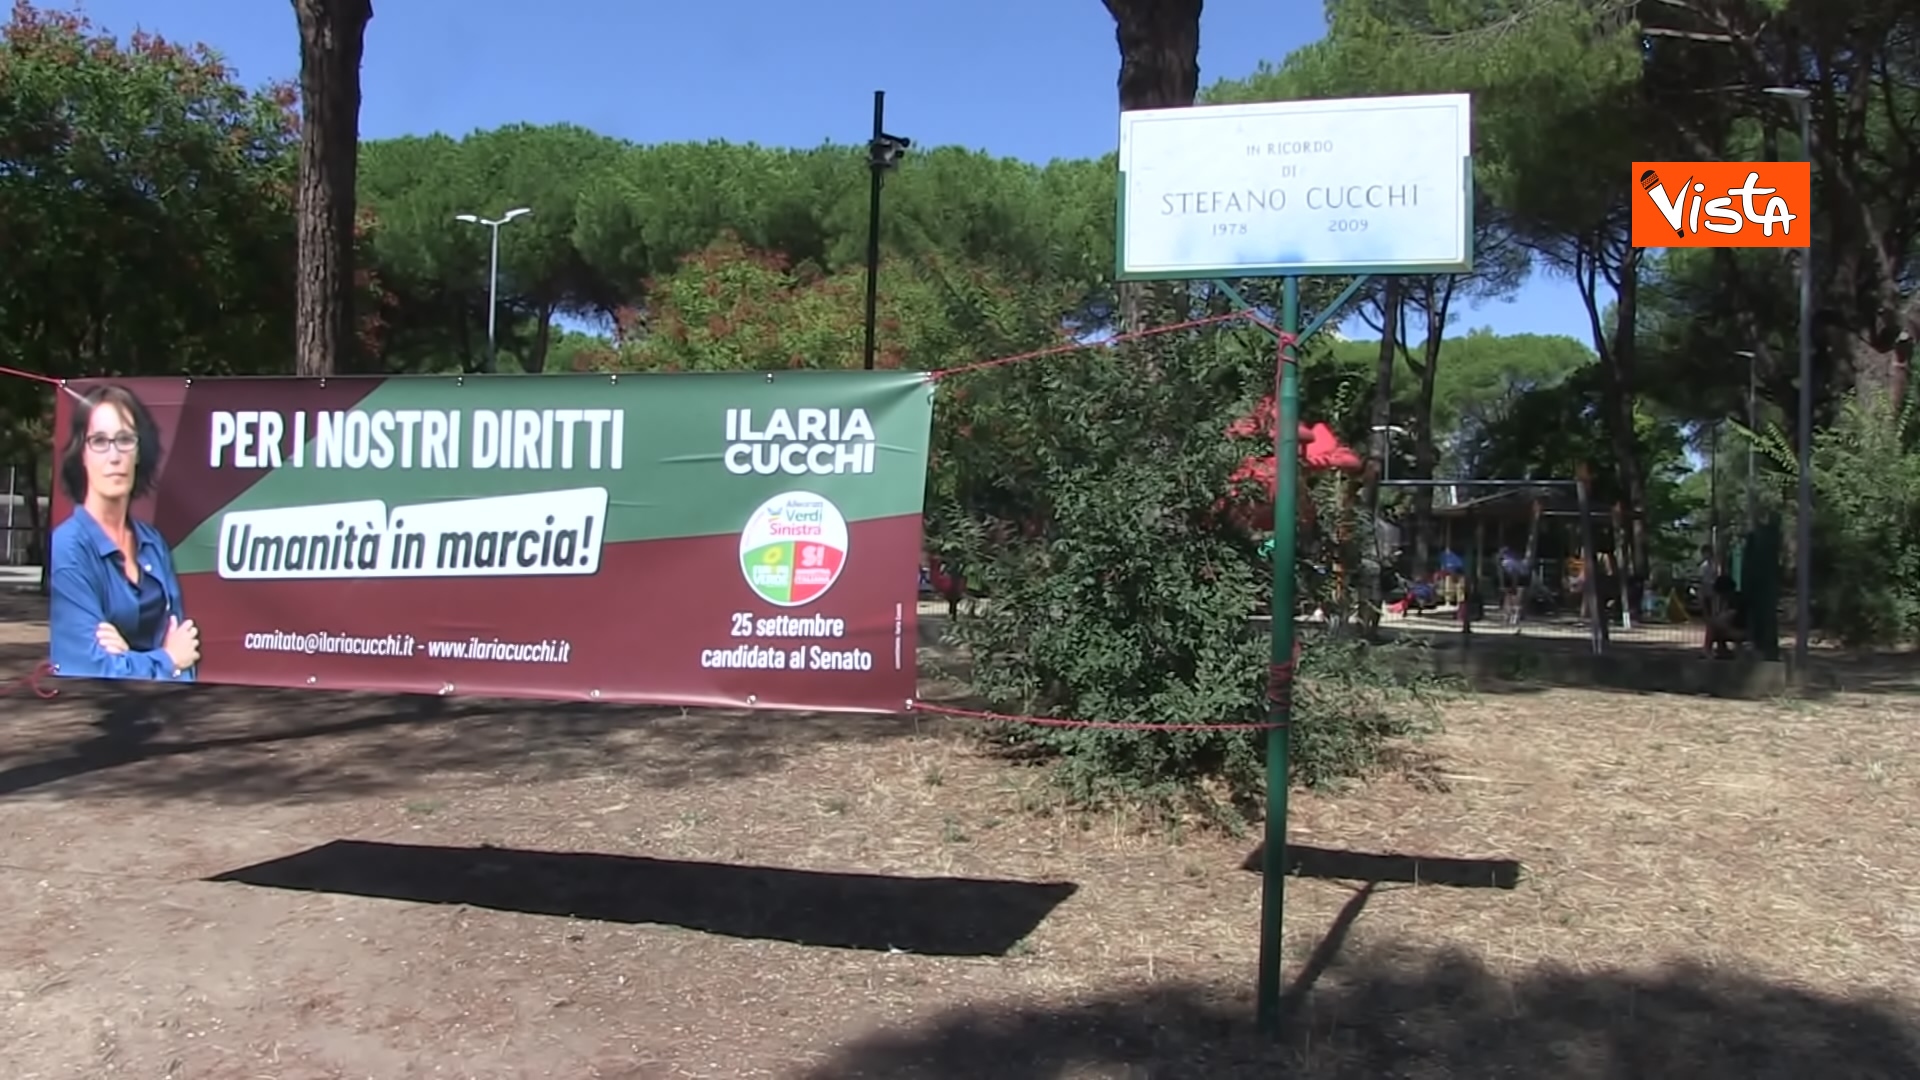 Ilaria Cucchi inizia la campagna elettorale, le foto dal Parco degli Acquedotti a Roma